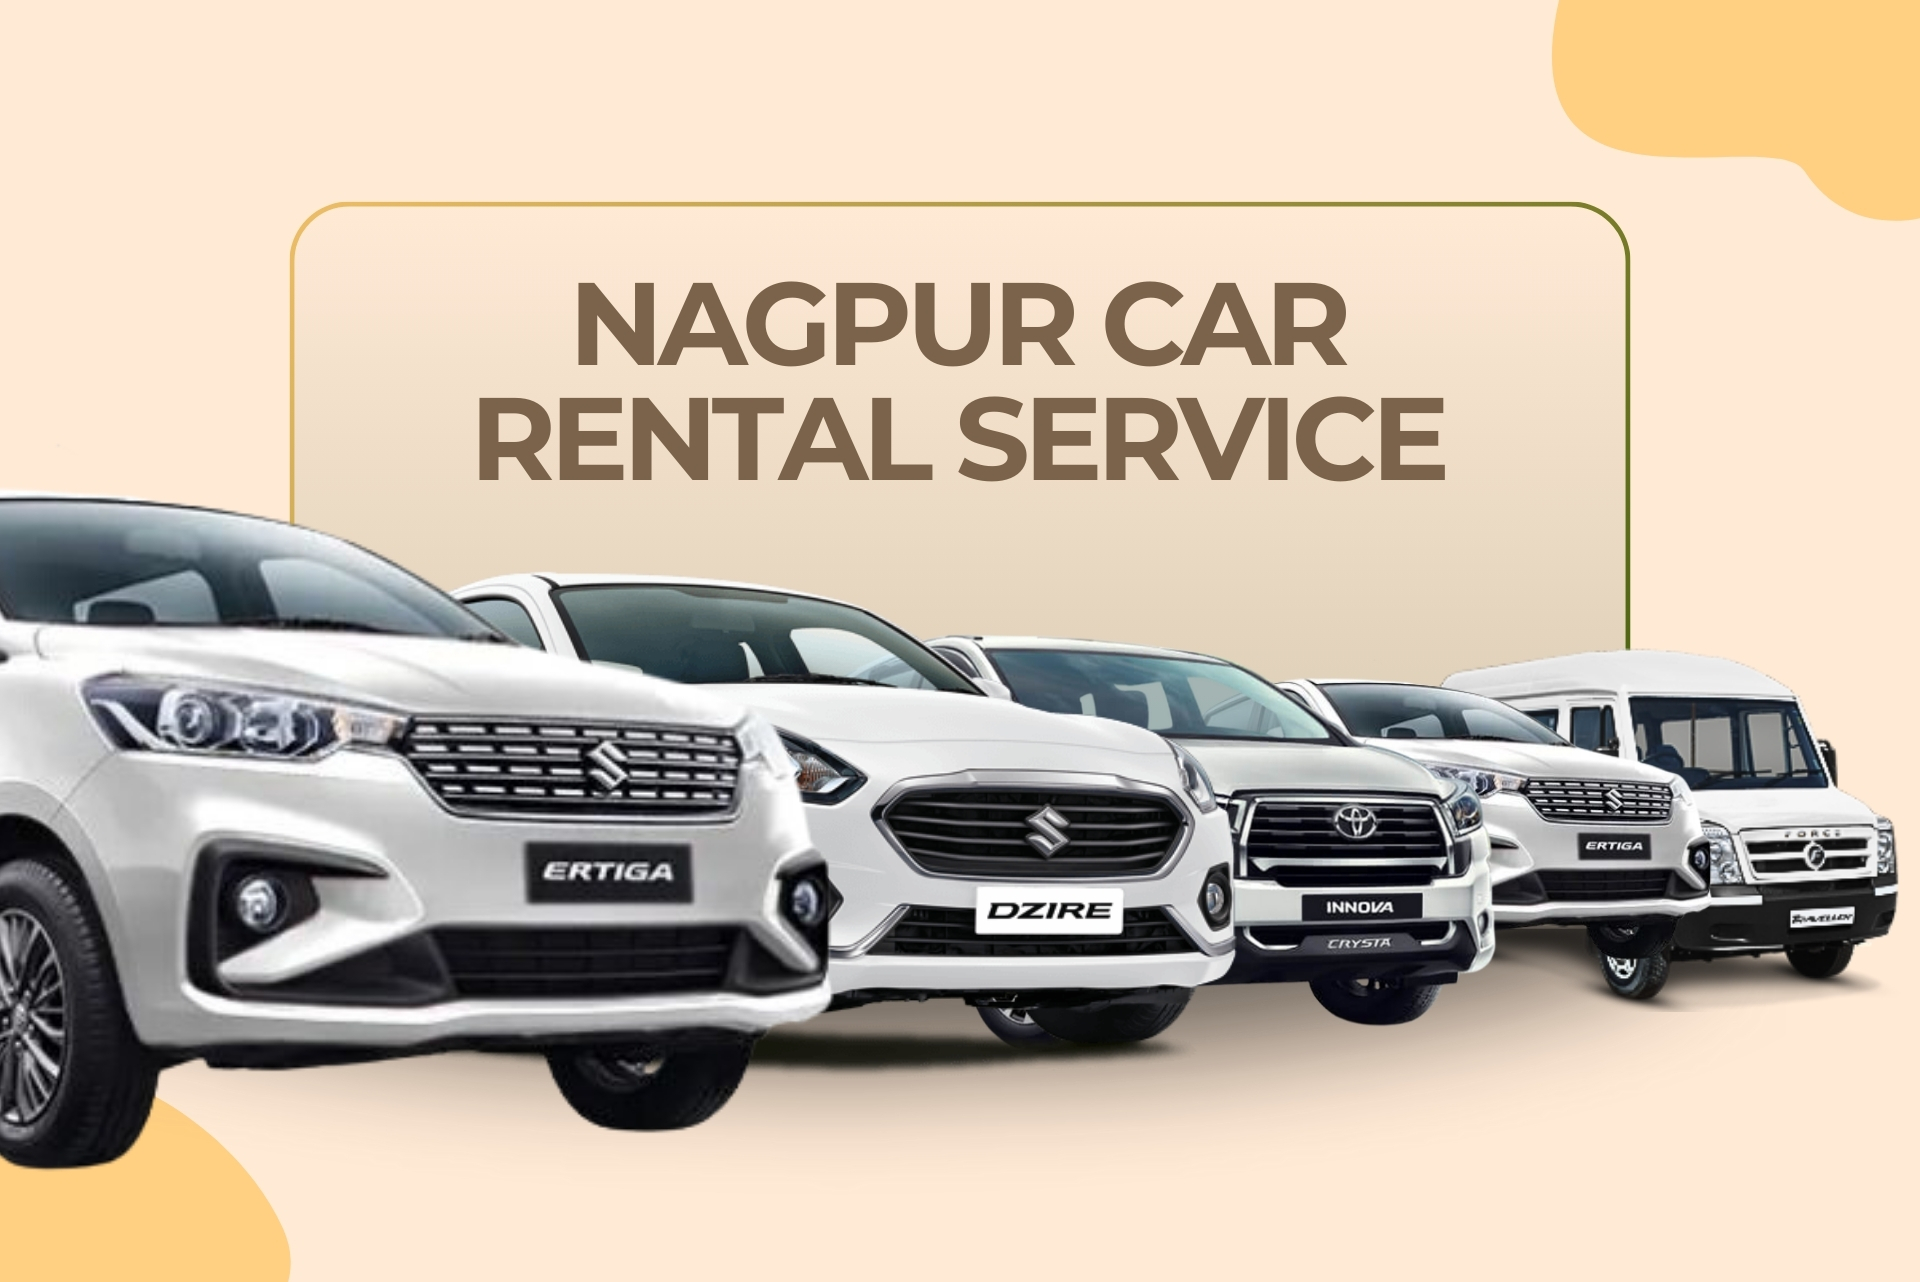 Nagpur Car Rental Service